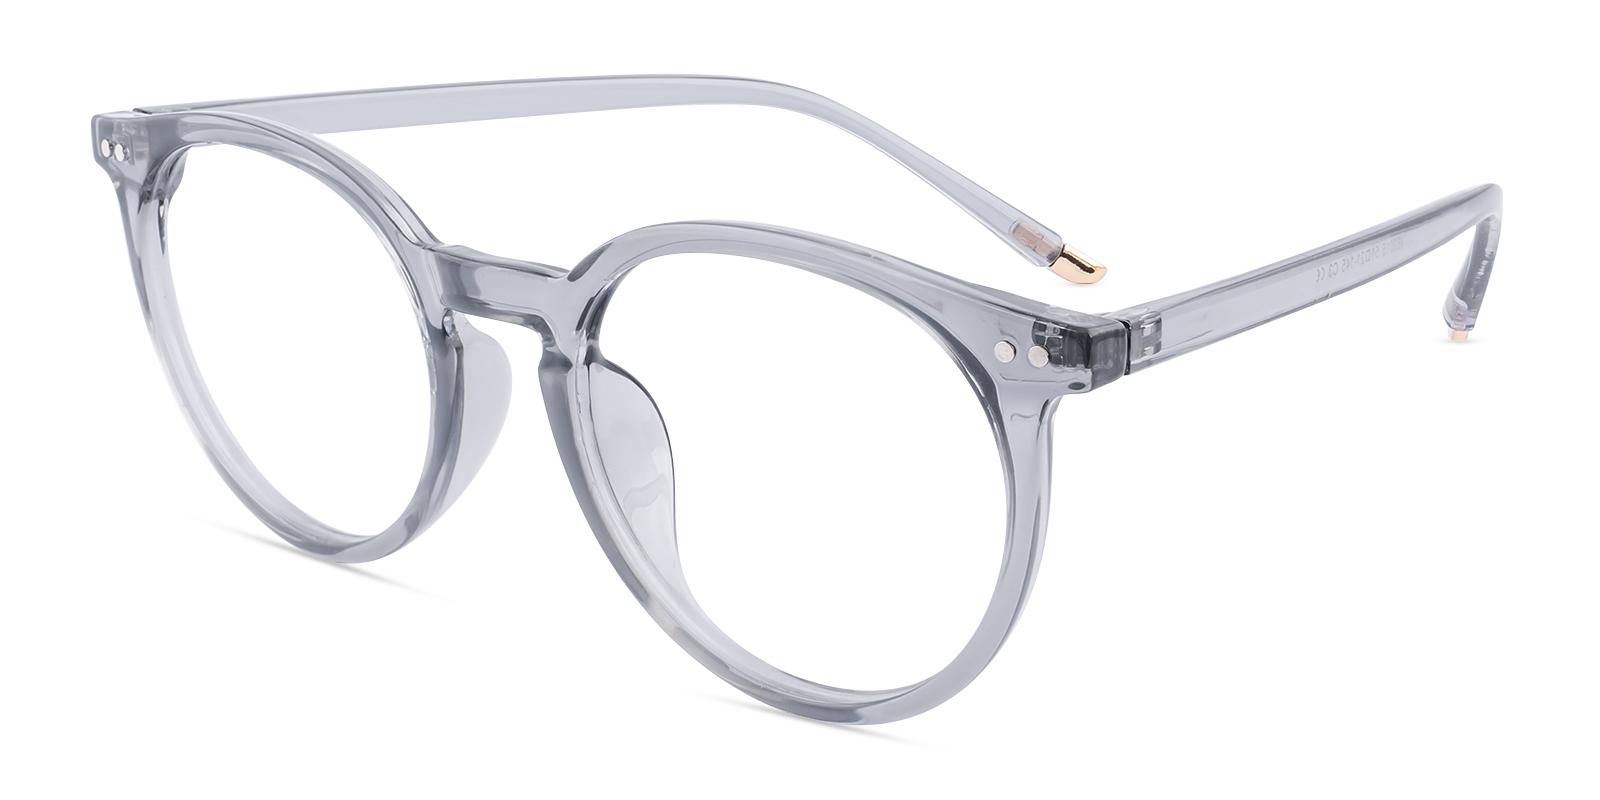 Soli Gray Plastic Eyeglasses , UniversalBridgeFit Frames from ABBE Glasses